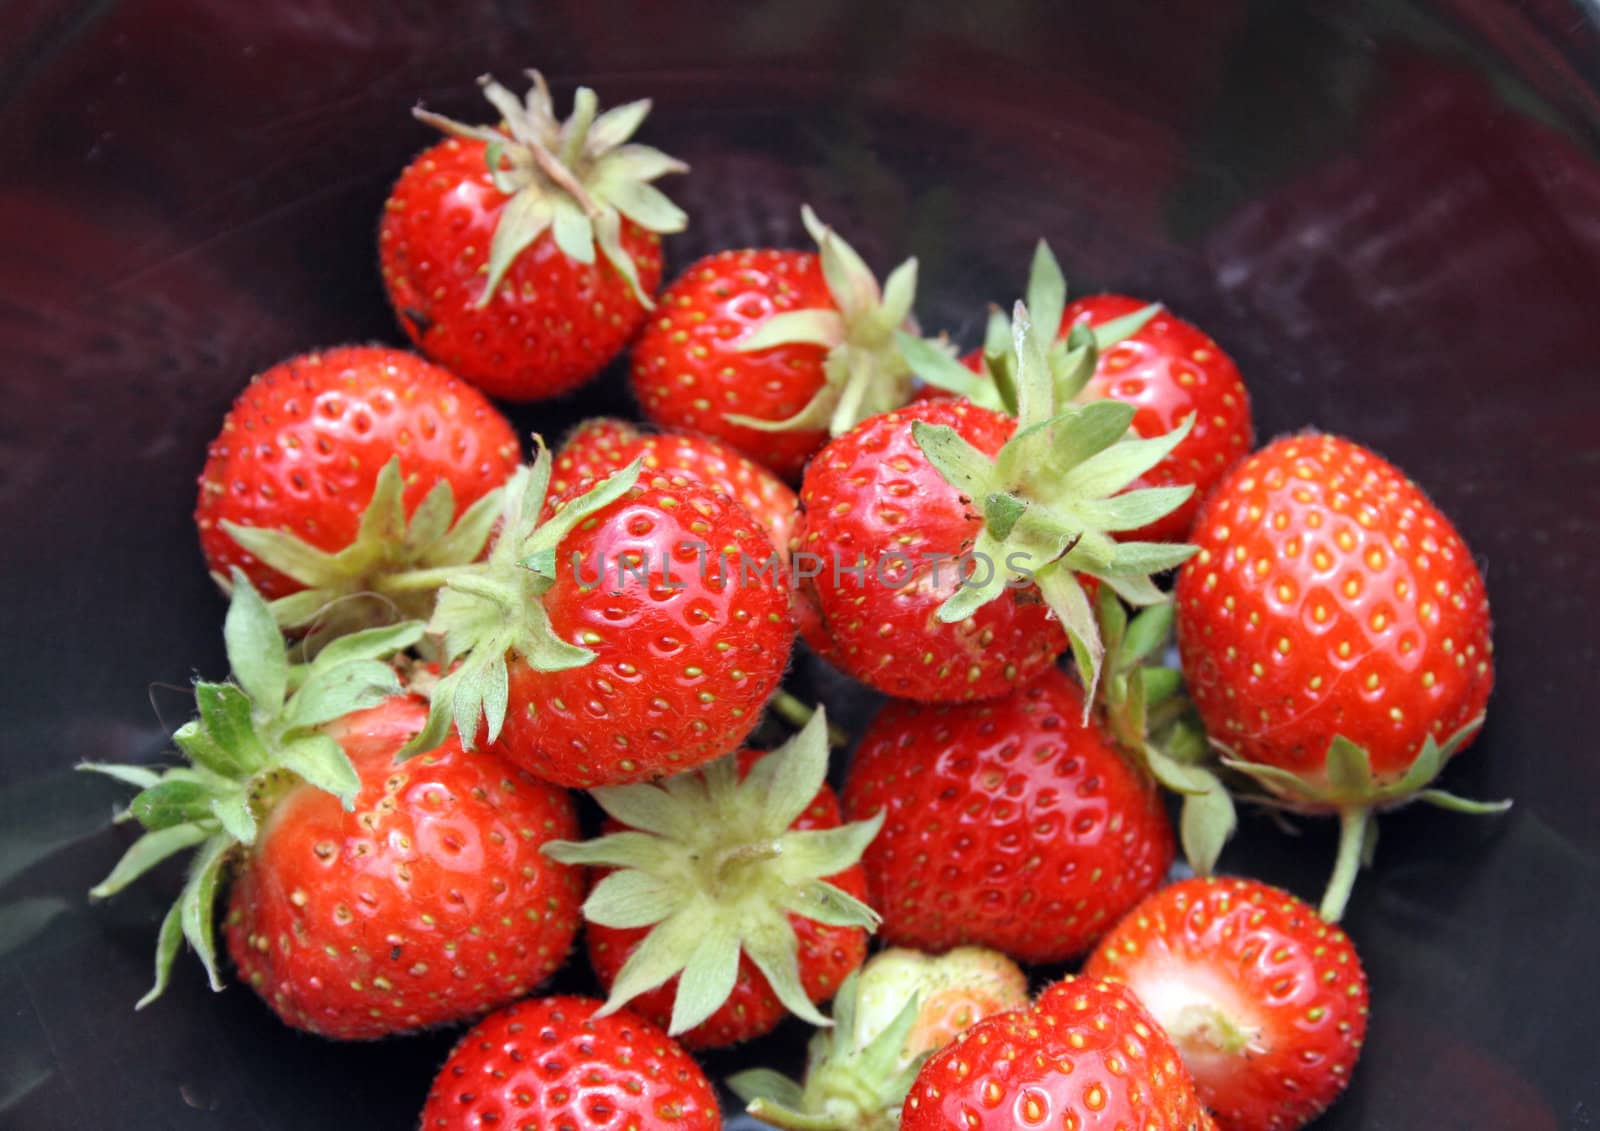 freshly harvested strawberries